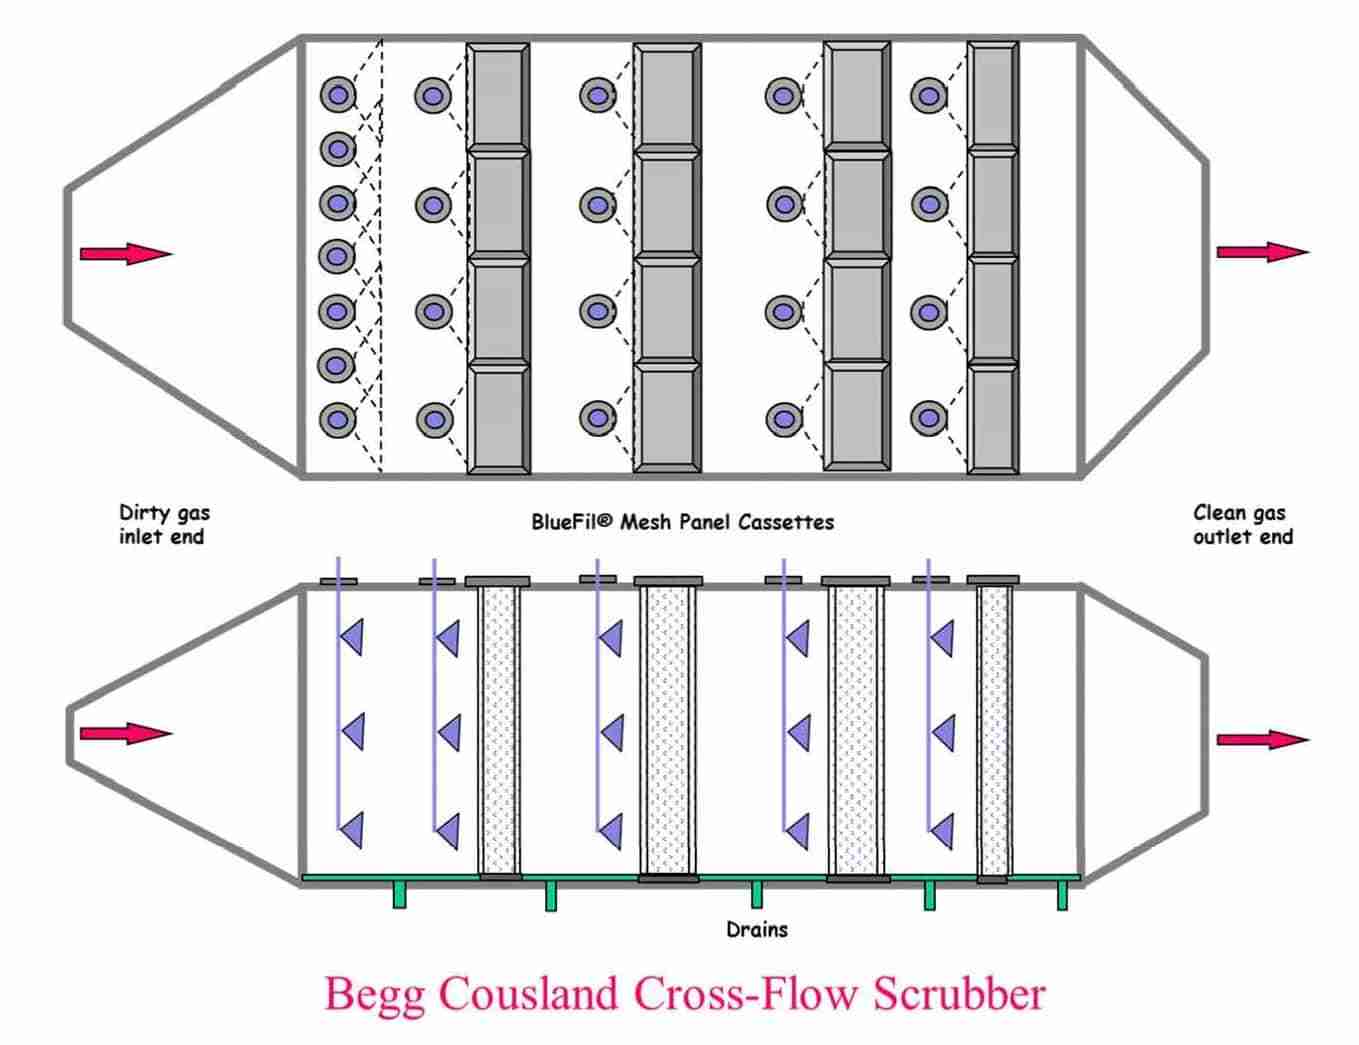 Begg Cousland Cross-flow Scrubber